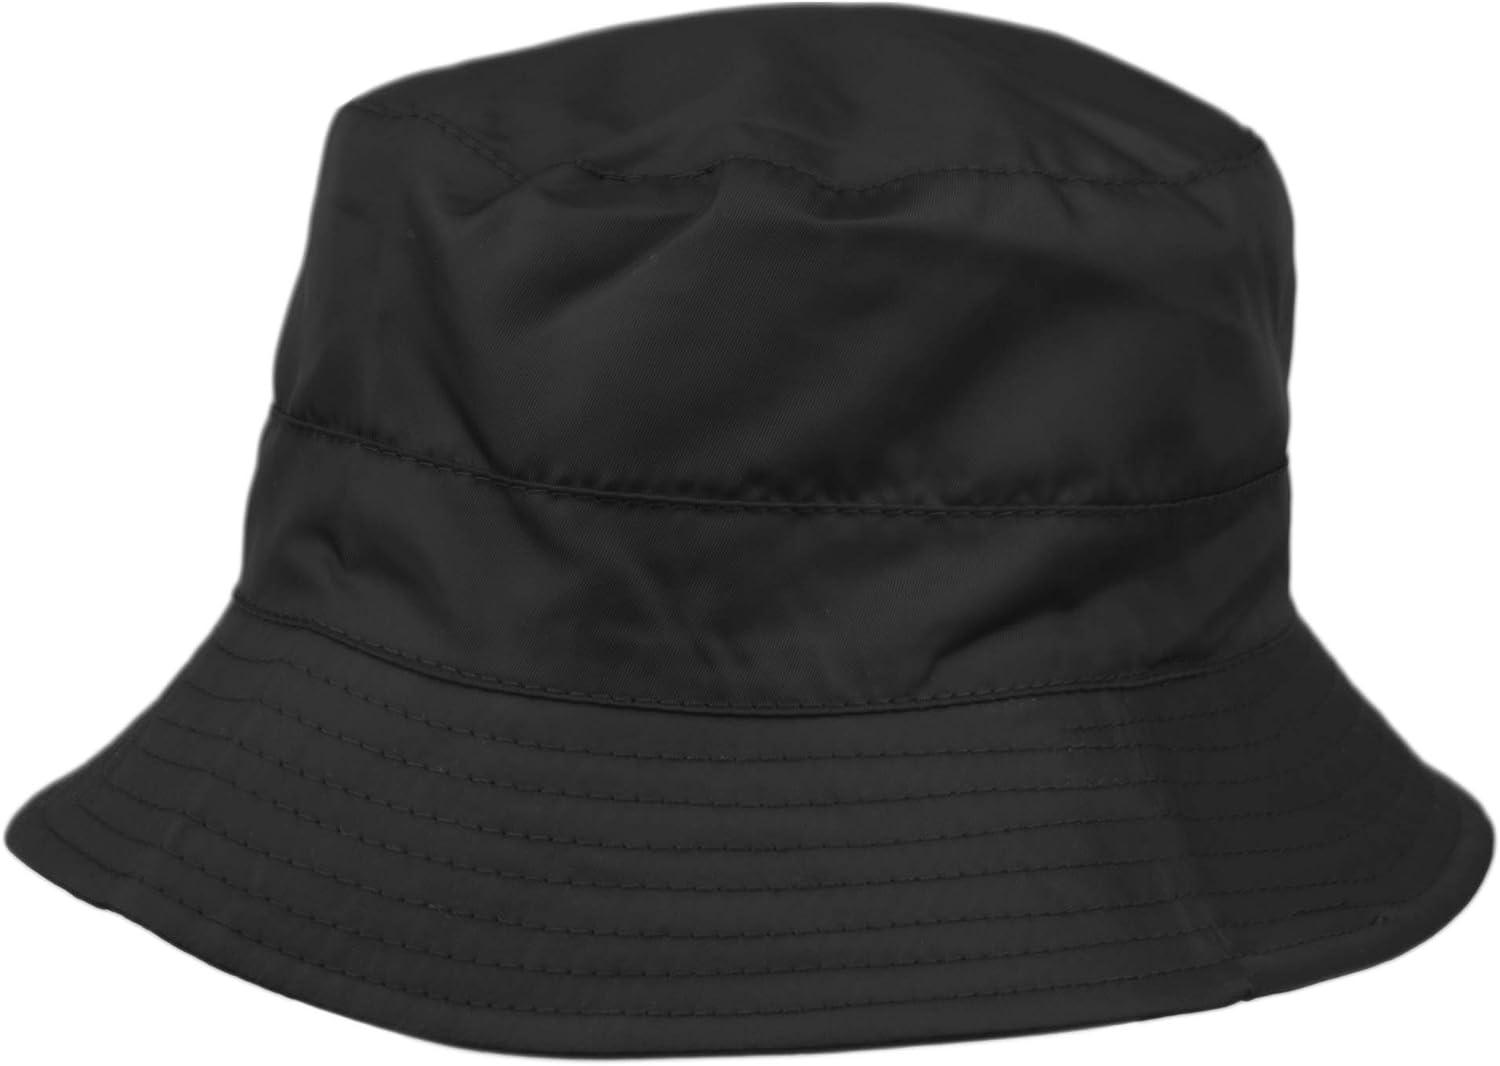 Adjustable Waterproof Bucket Rain Hat in Nylon, Easy to fold CL3056  Cl3056black